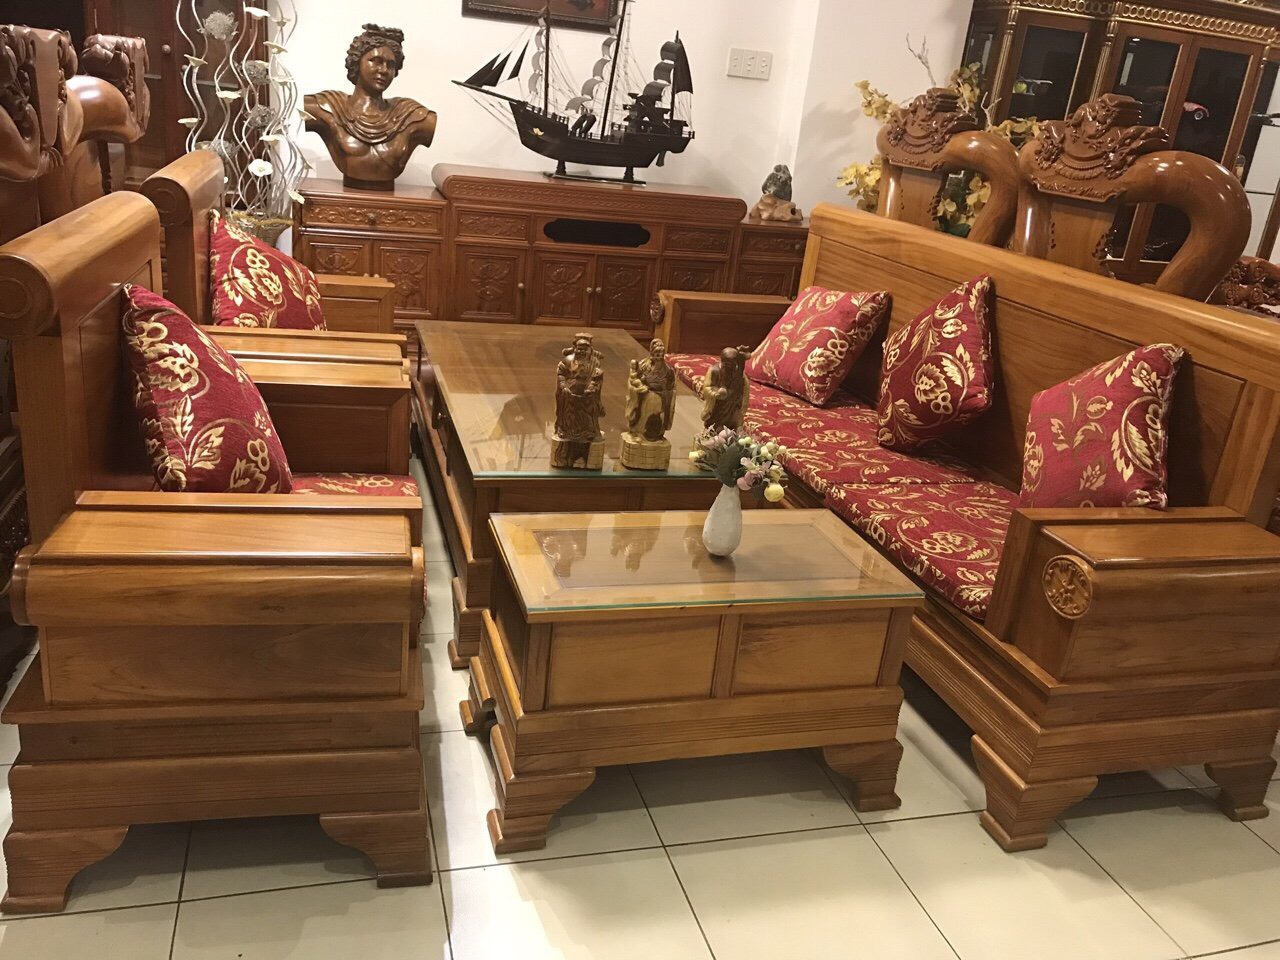 Bộ bàn ghế sofa pháo gỗ gõ đỏ đẹp được thiết kế với vẻ đẹp hoàn hảo và sự thoải mái vô tận. Chất liệu gỗ gõ đỏ được chọn lọc kỹ càng để đảm bảo chất lượng nguyên vẹn. Với bộ sản phẩm này, bạn sẽ có không gian sống độc đáo và ấn tượng.